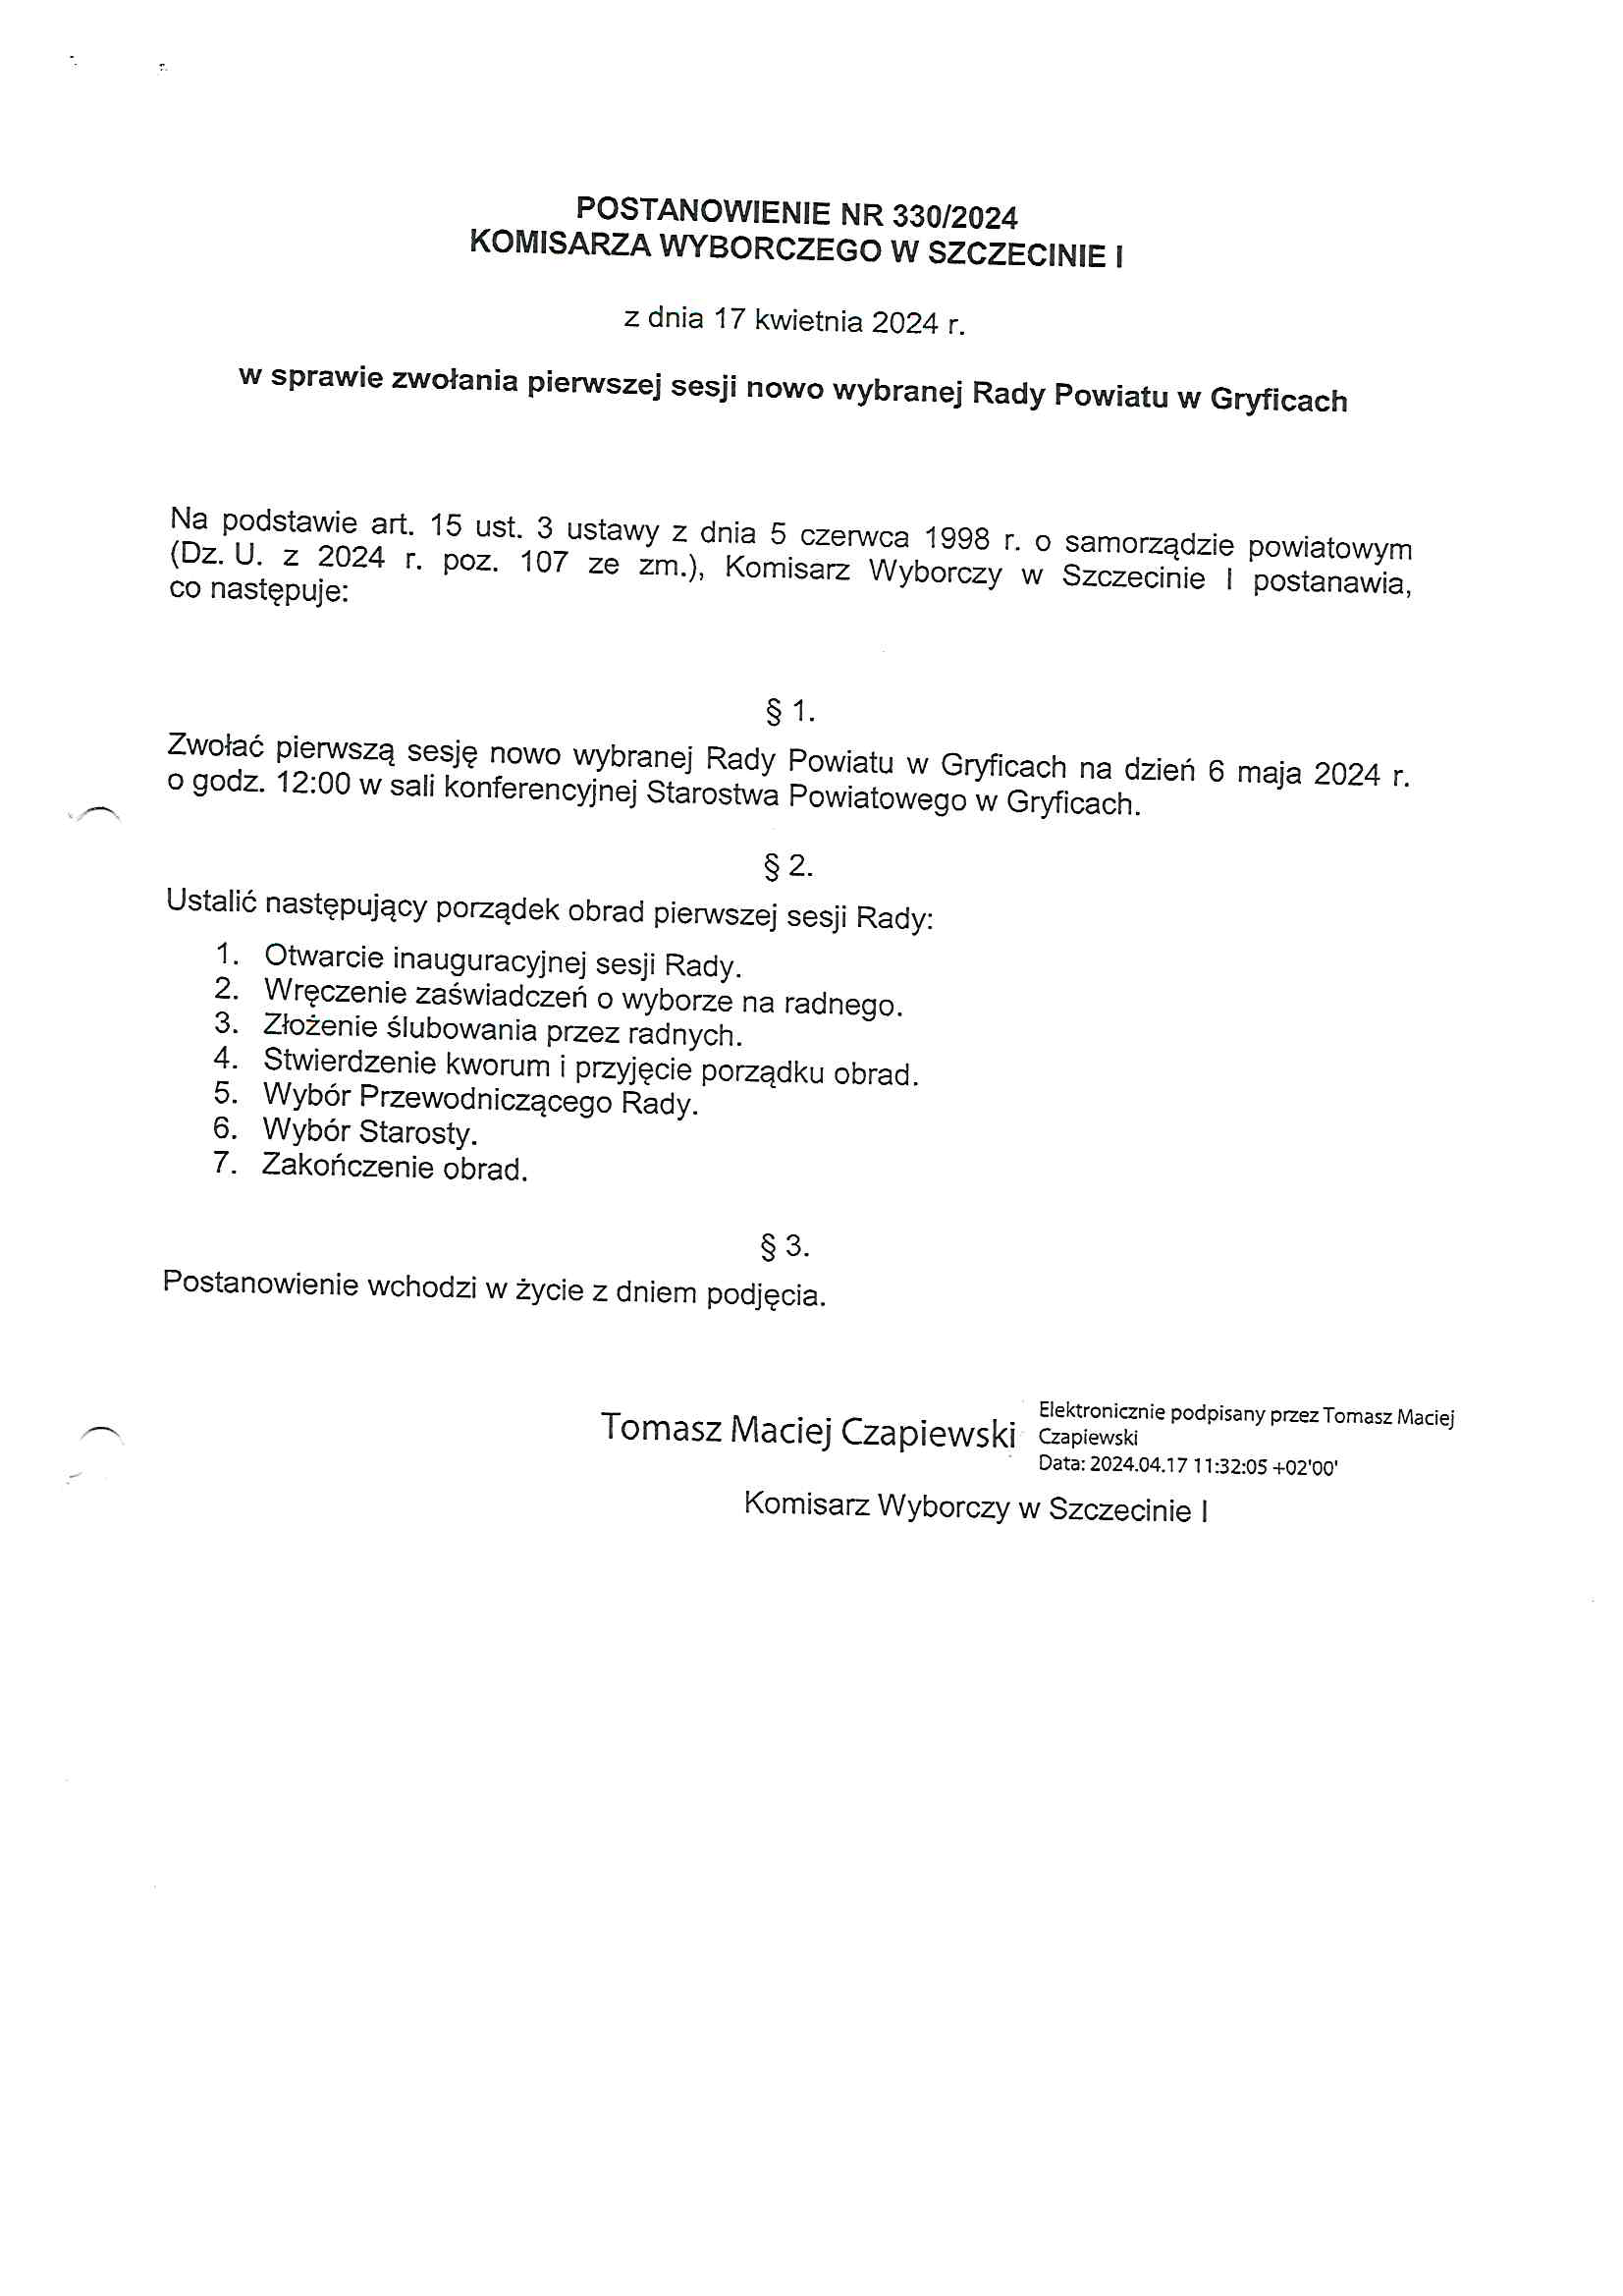 Postanowienie Komisarza wyborczego w Szczewcinie w sprawie zwołania pierwszej seji nowo wybranej Rady Powiatu Gryfickiego 